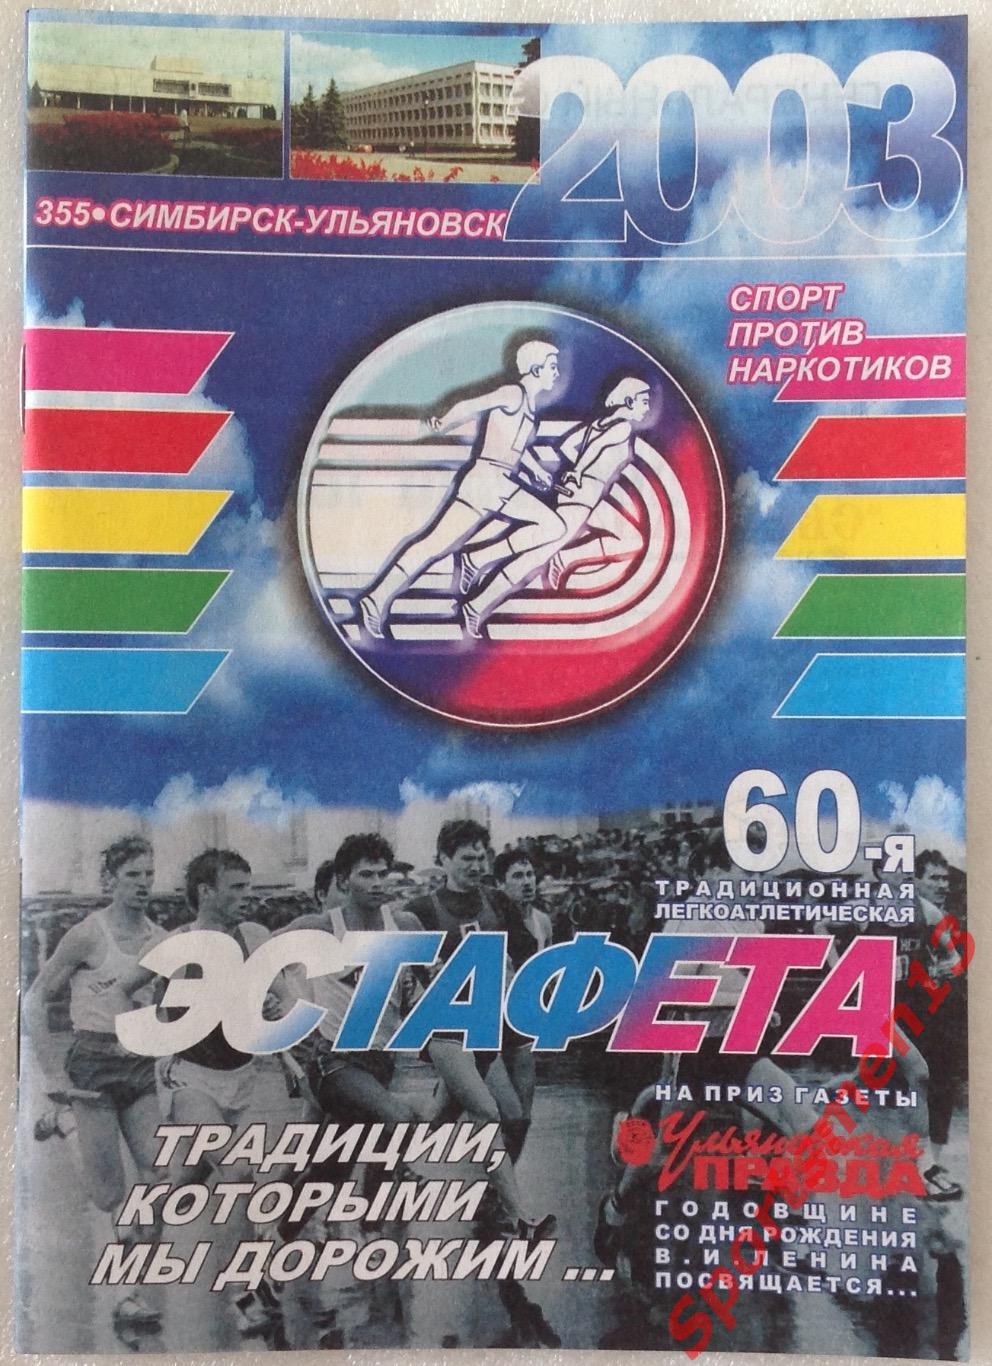 Легкоатлетическая эстафета, 2003. Ульяновск